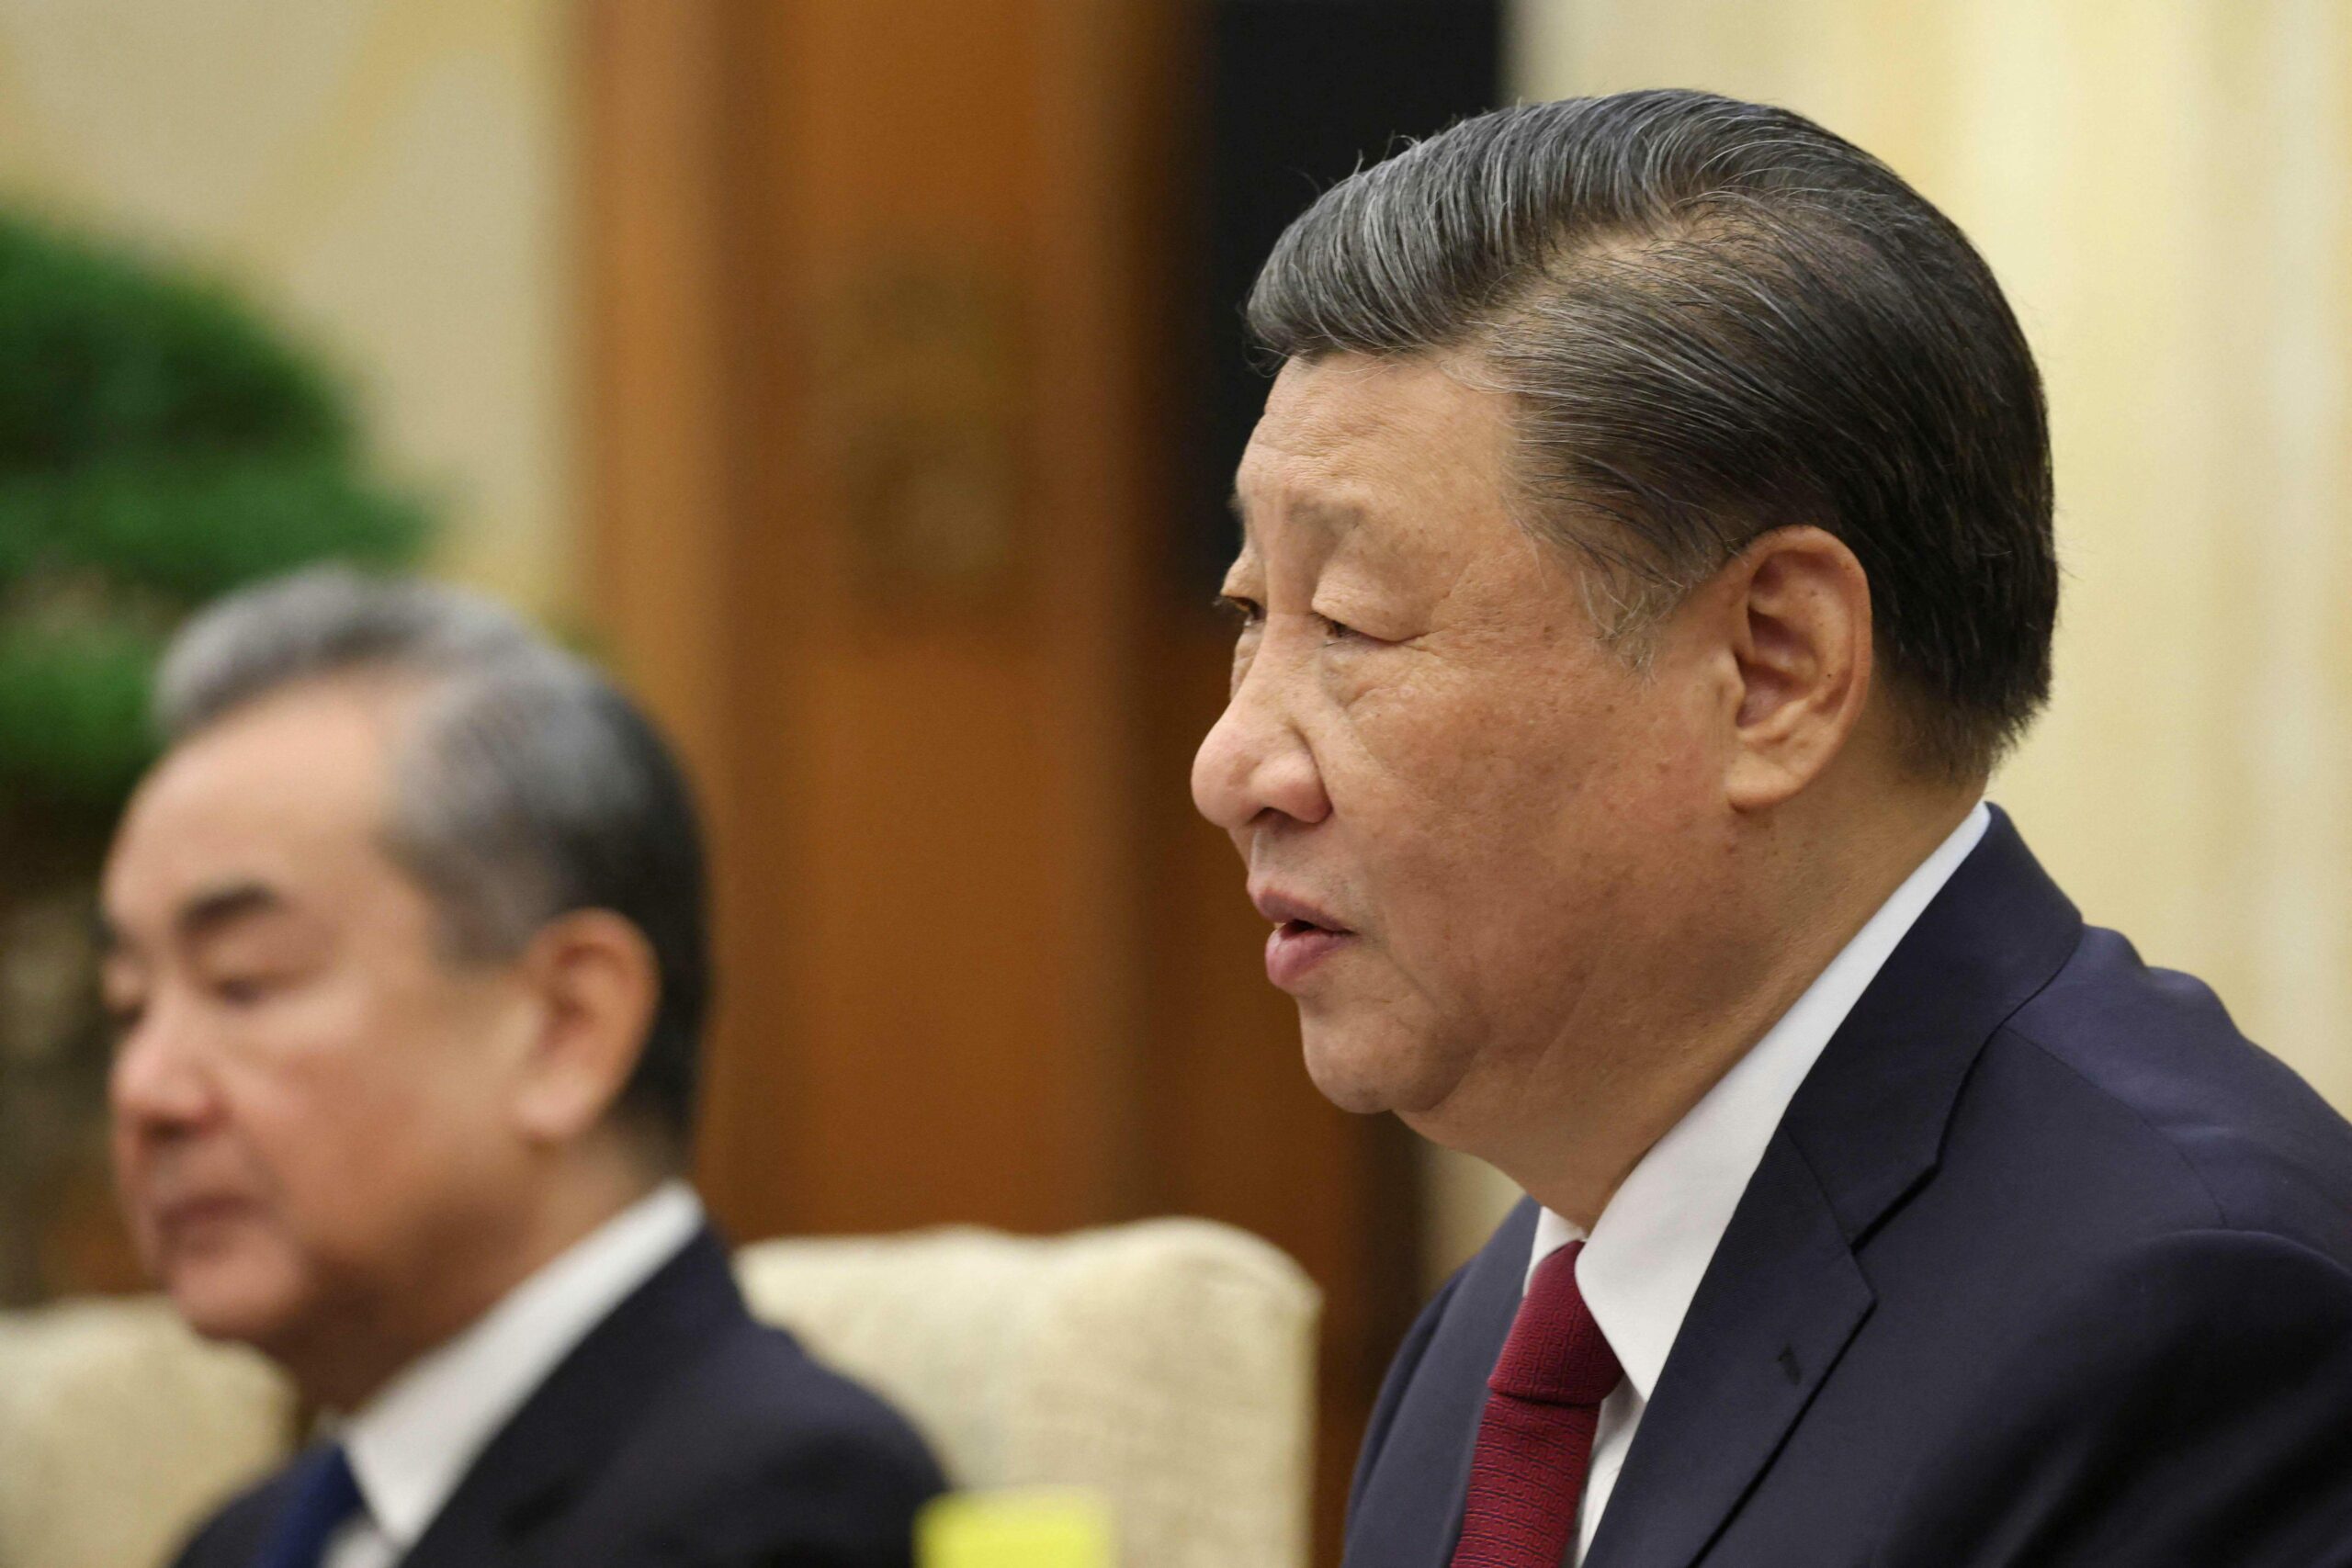 Kiina sai uuden puolustusministerin kadonneen tilalle | Verkkouutiset